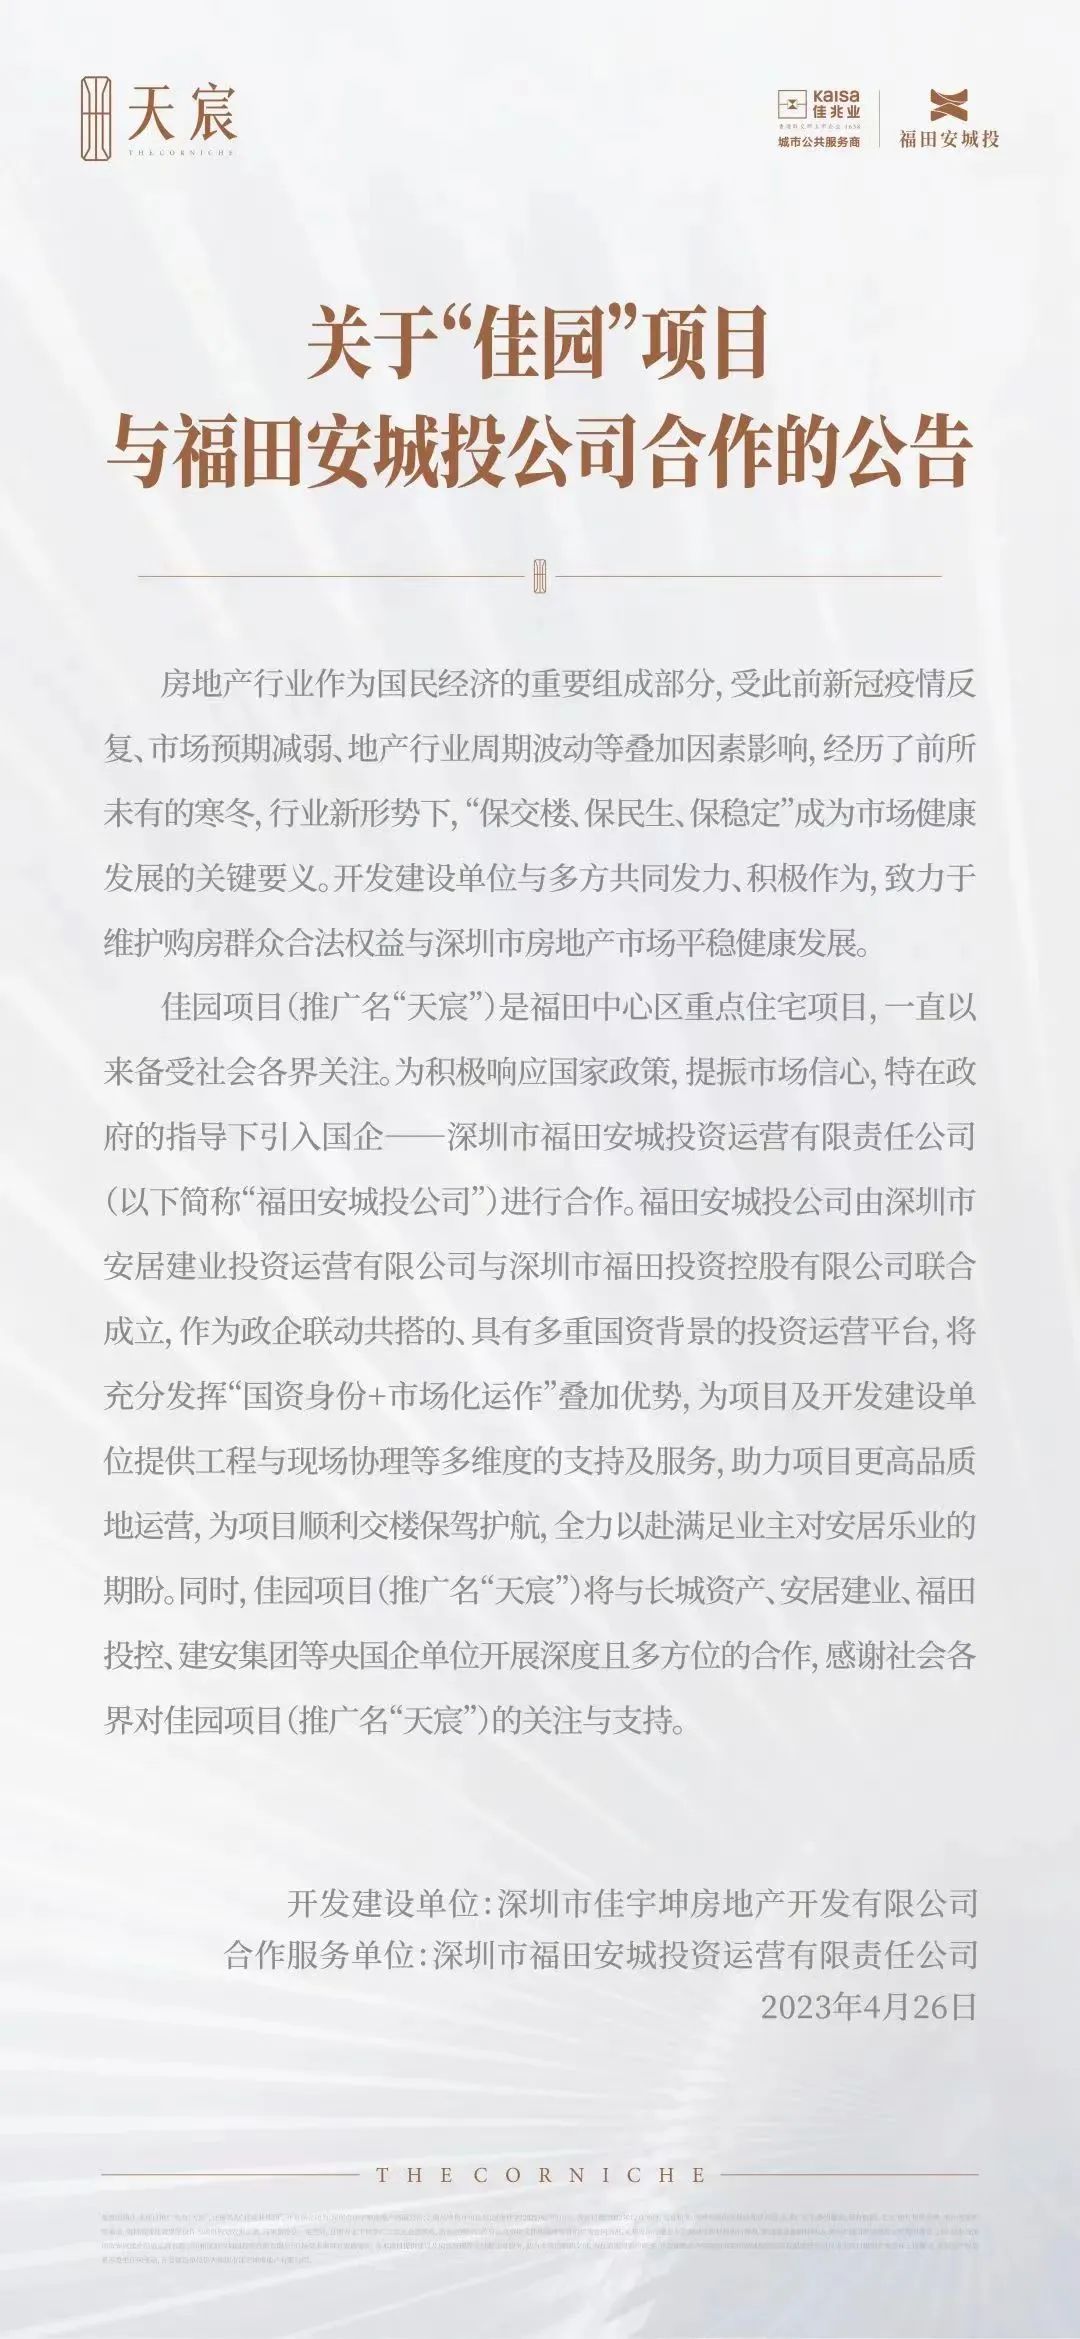 深圳国资联手长城资产拟盘活佳兆业核心资产 潮商资讯 图1张